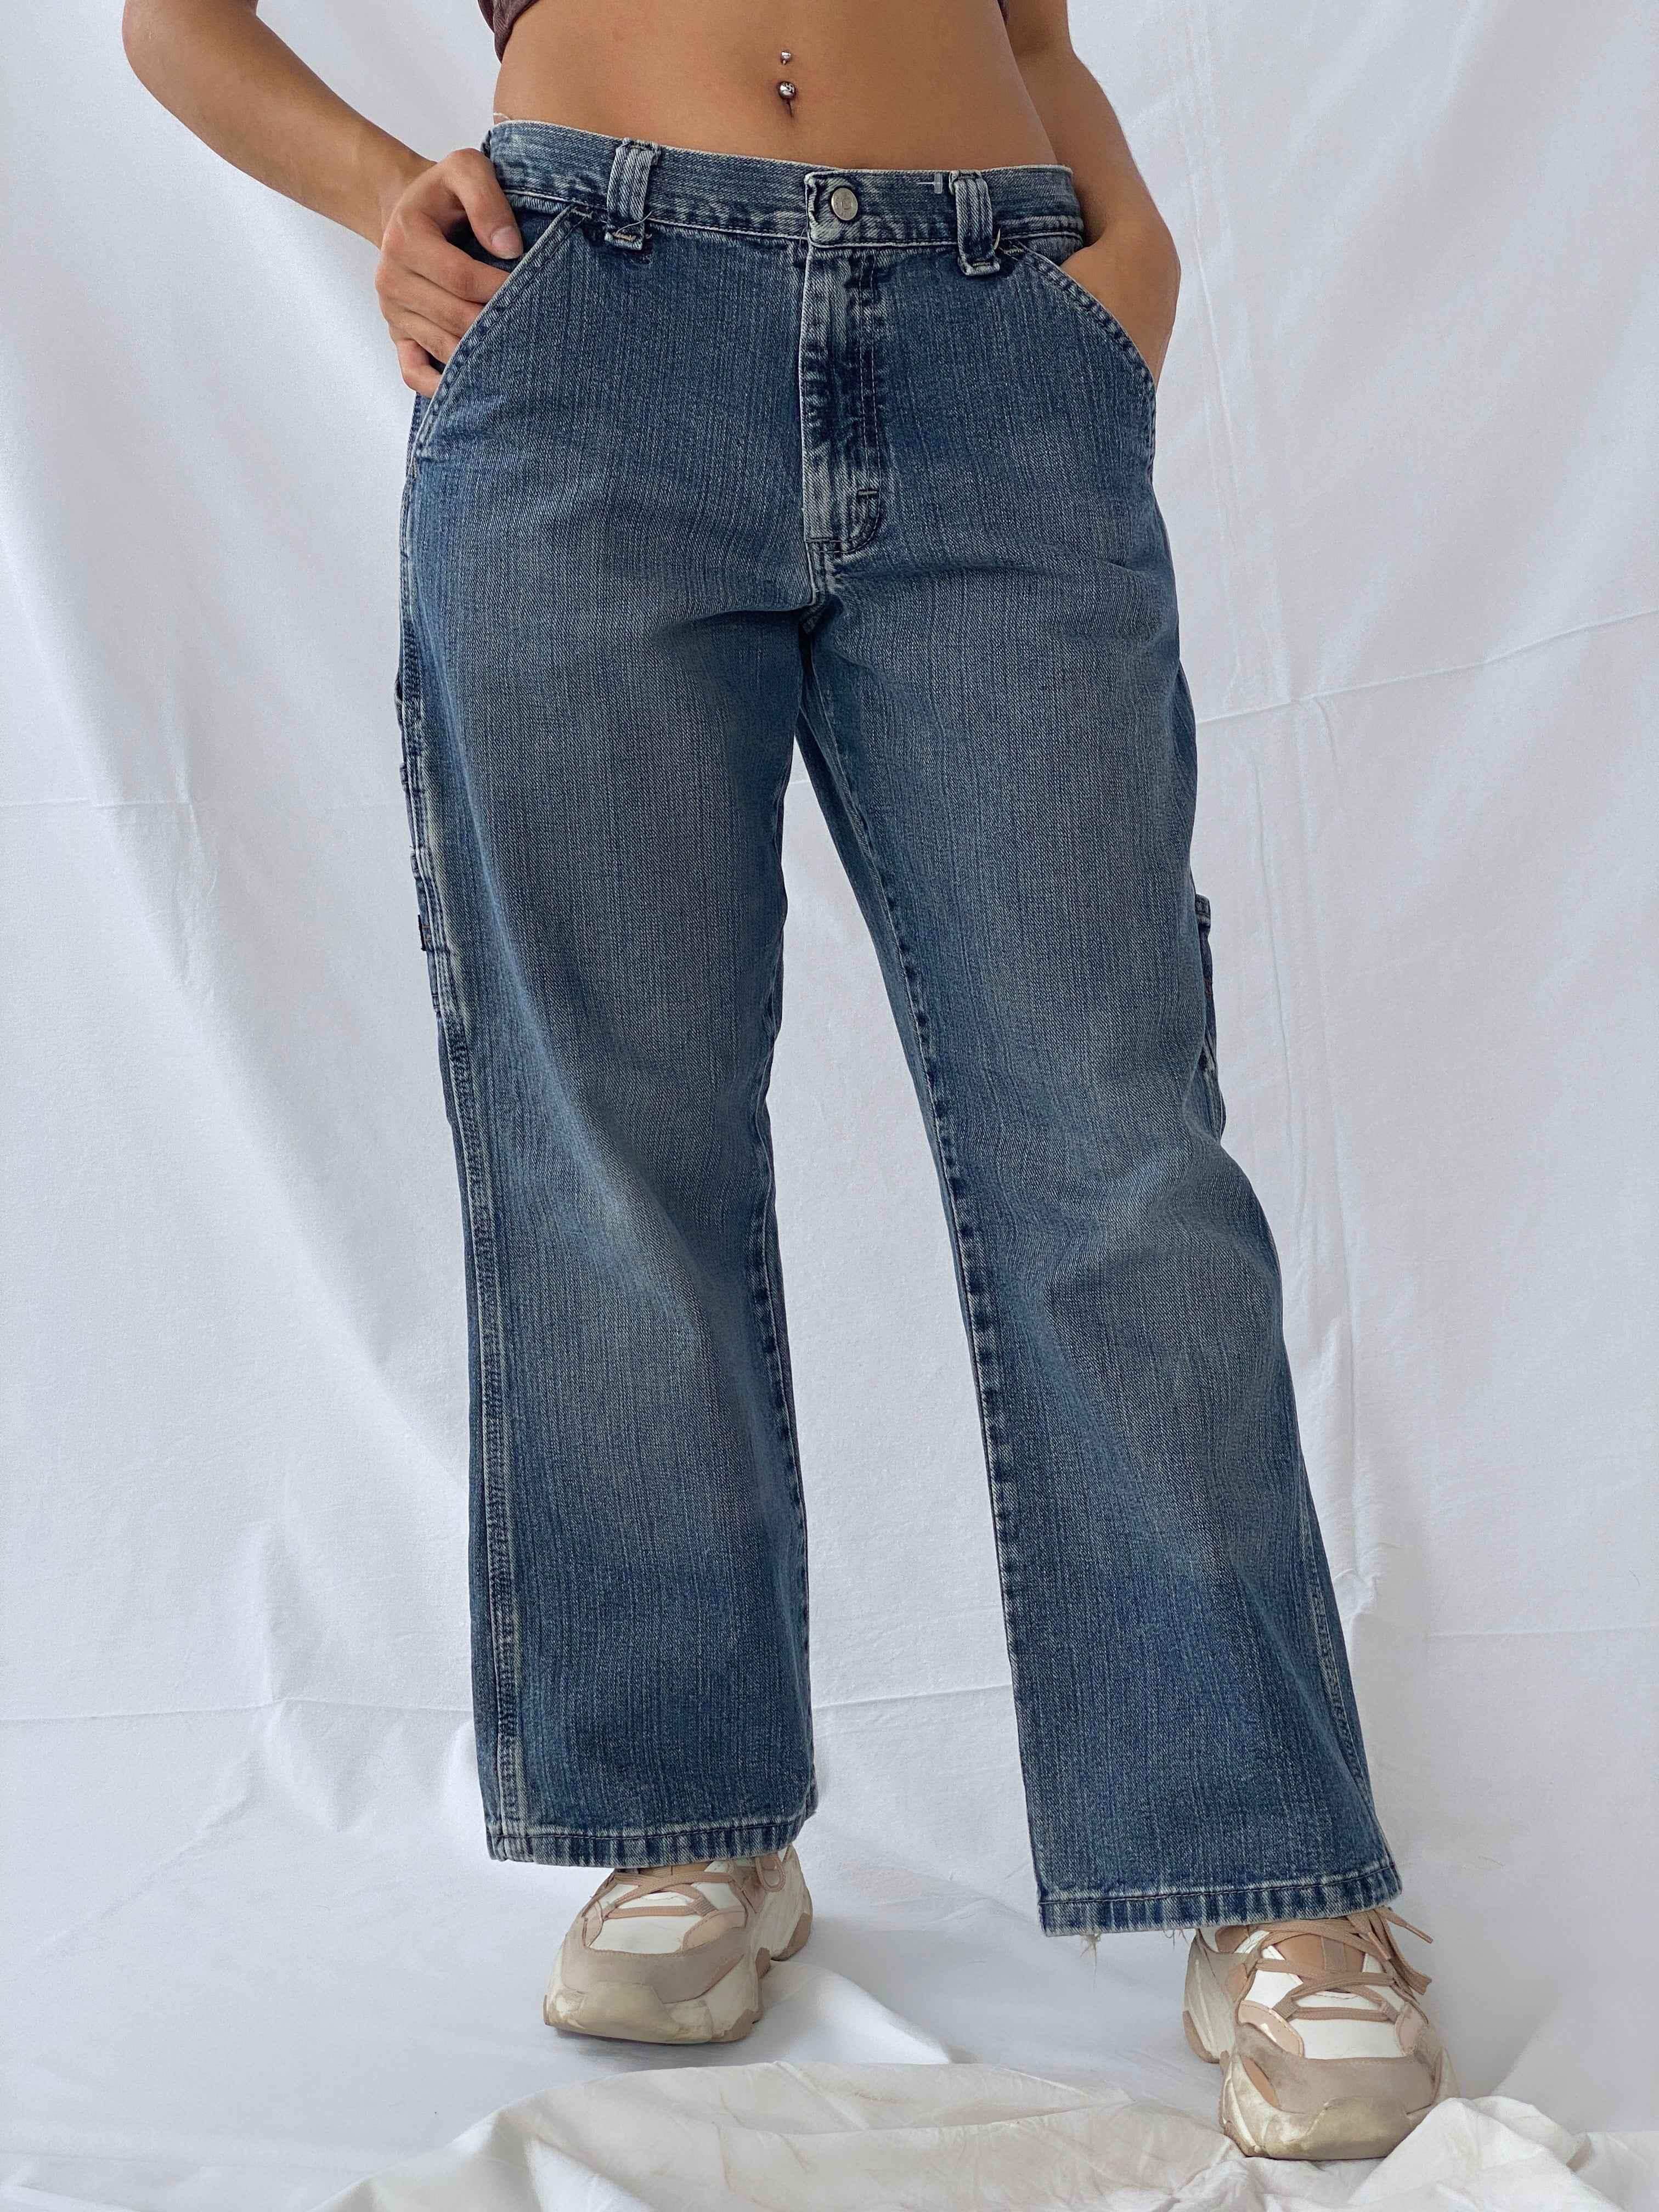 Vintage Wrangler Originals Jeans - Balagan Vintage Jeans 90s, jeans